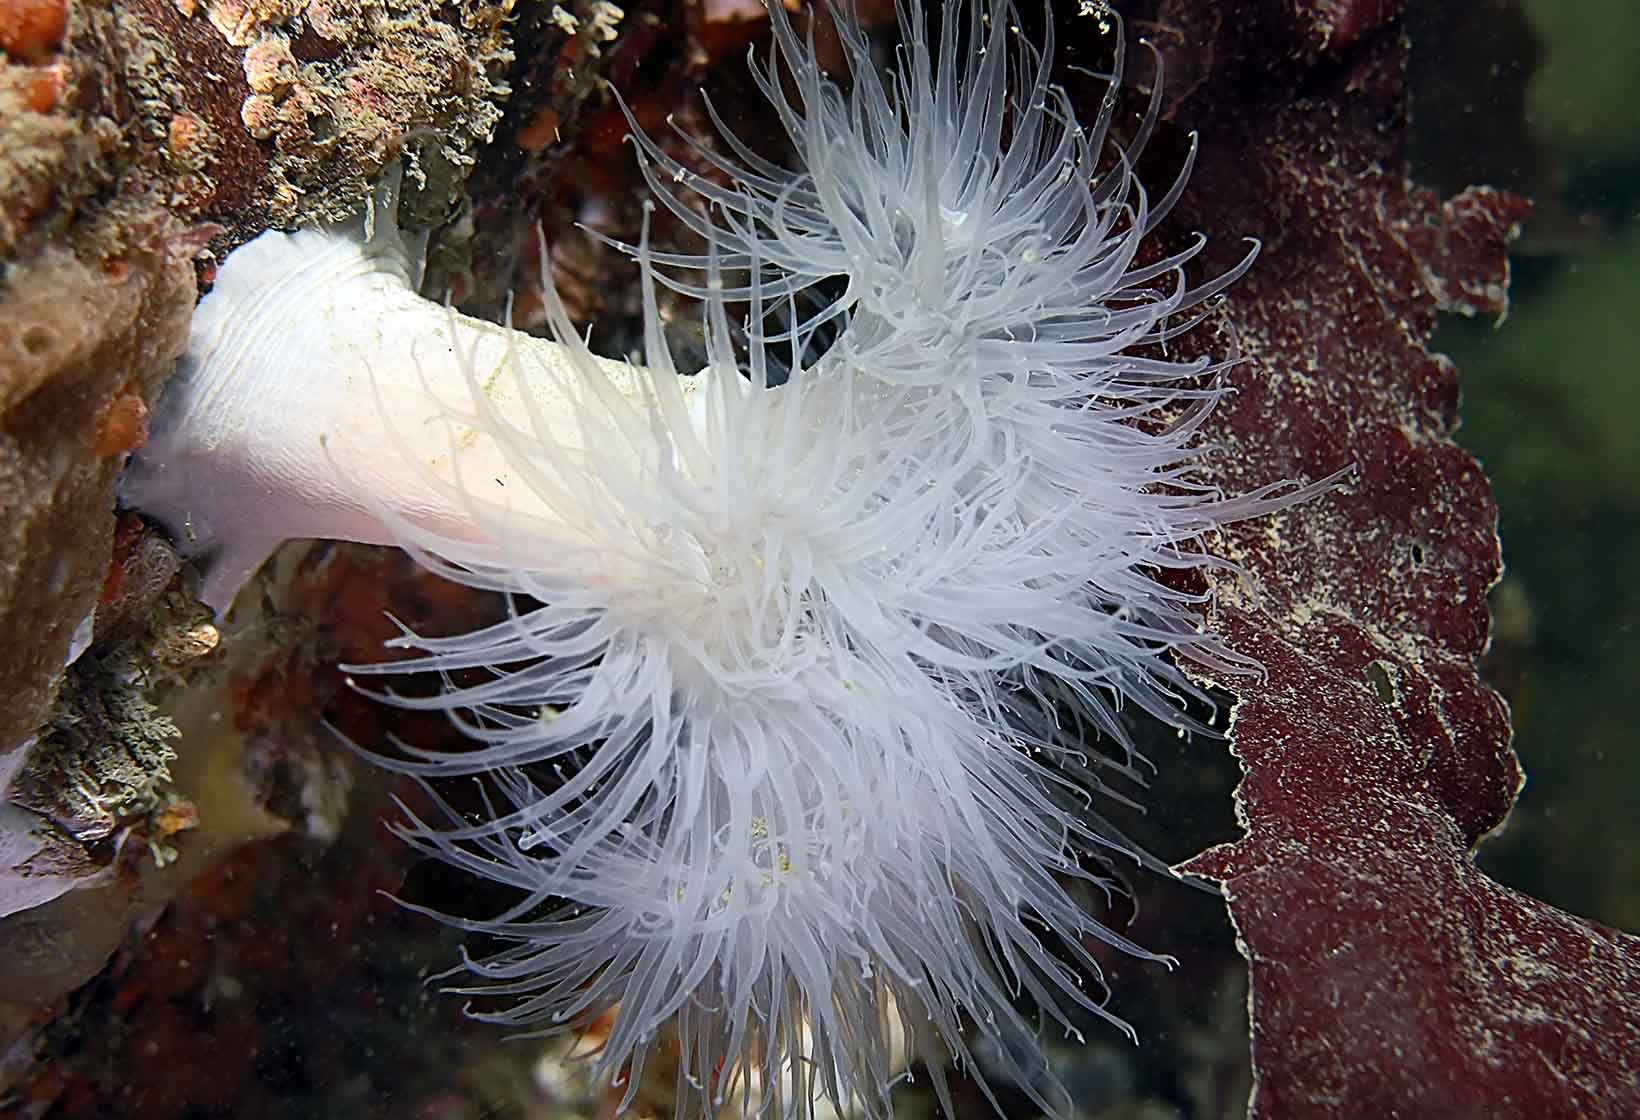 Giant plumose anemone » Invertebrates » Aquarium » Exhibitions